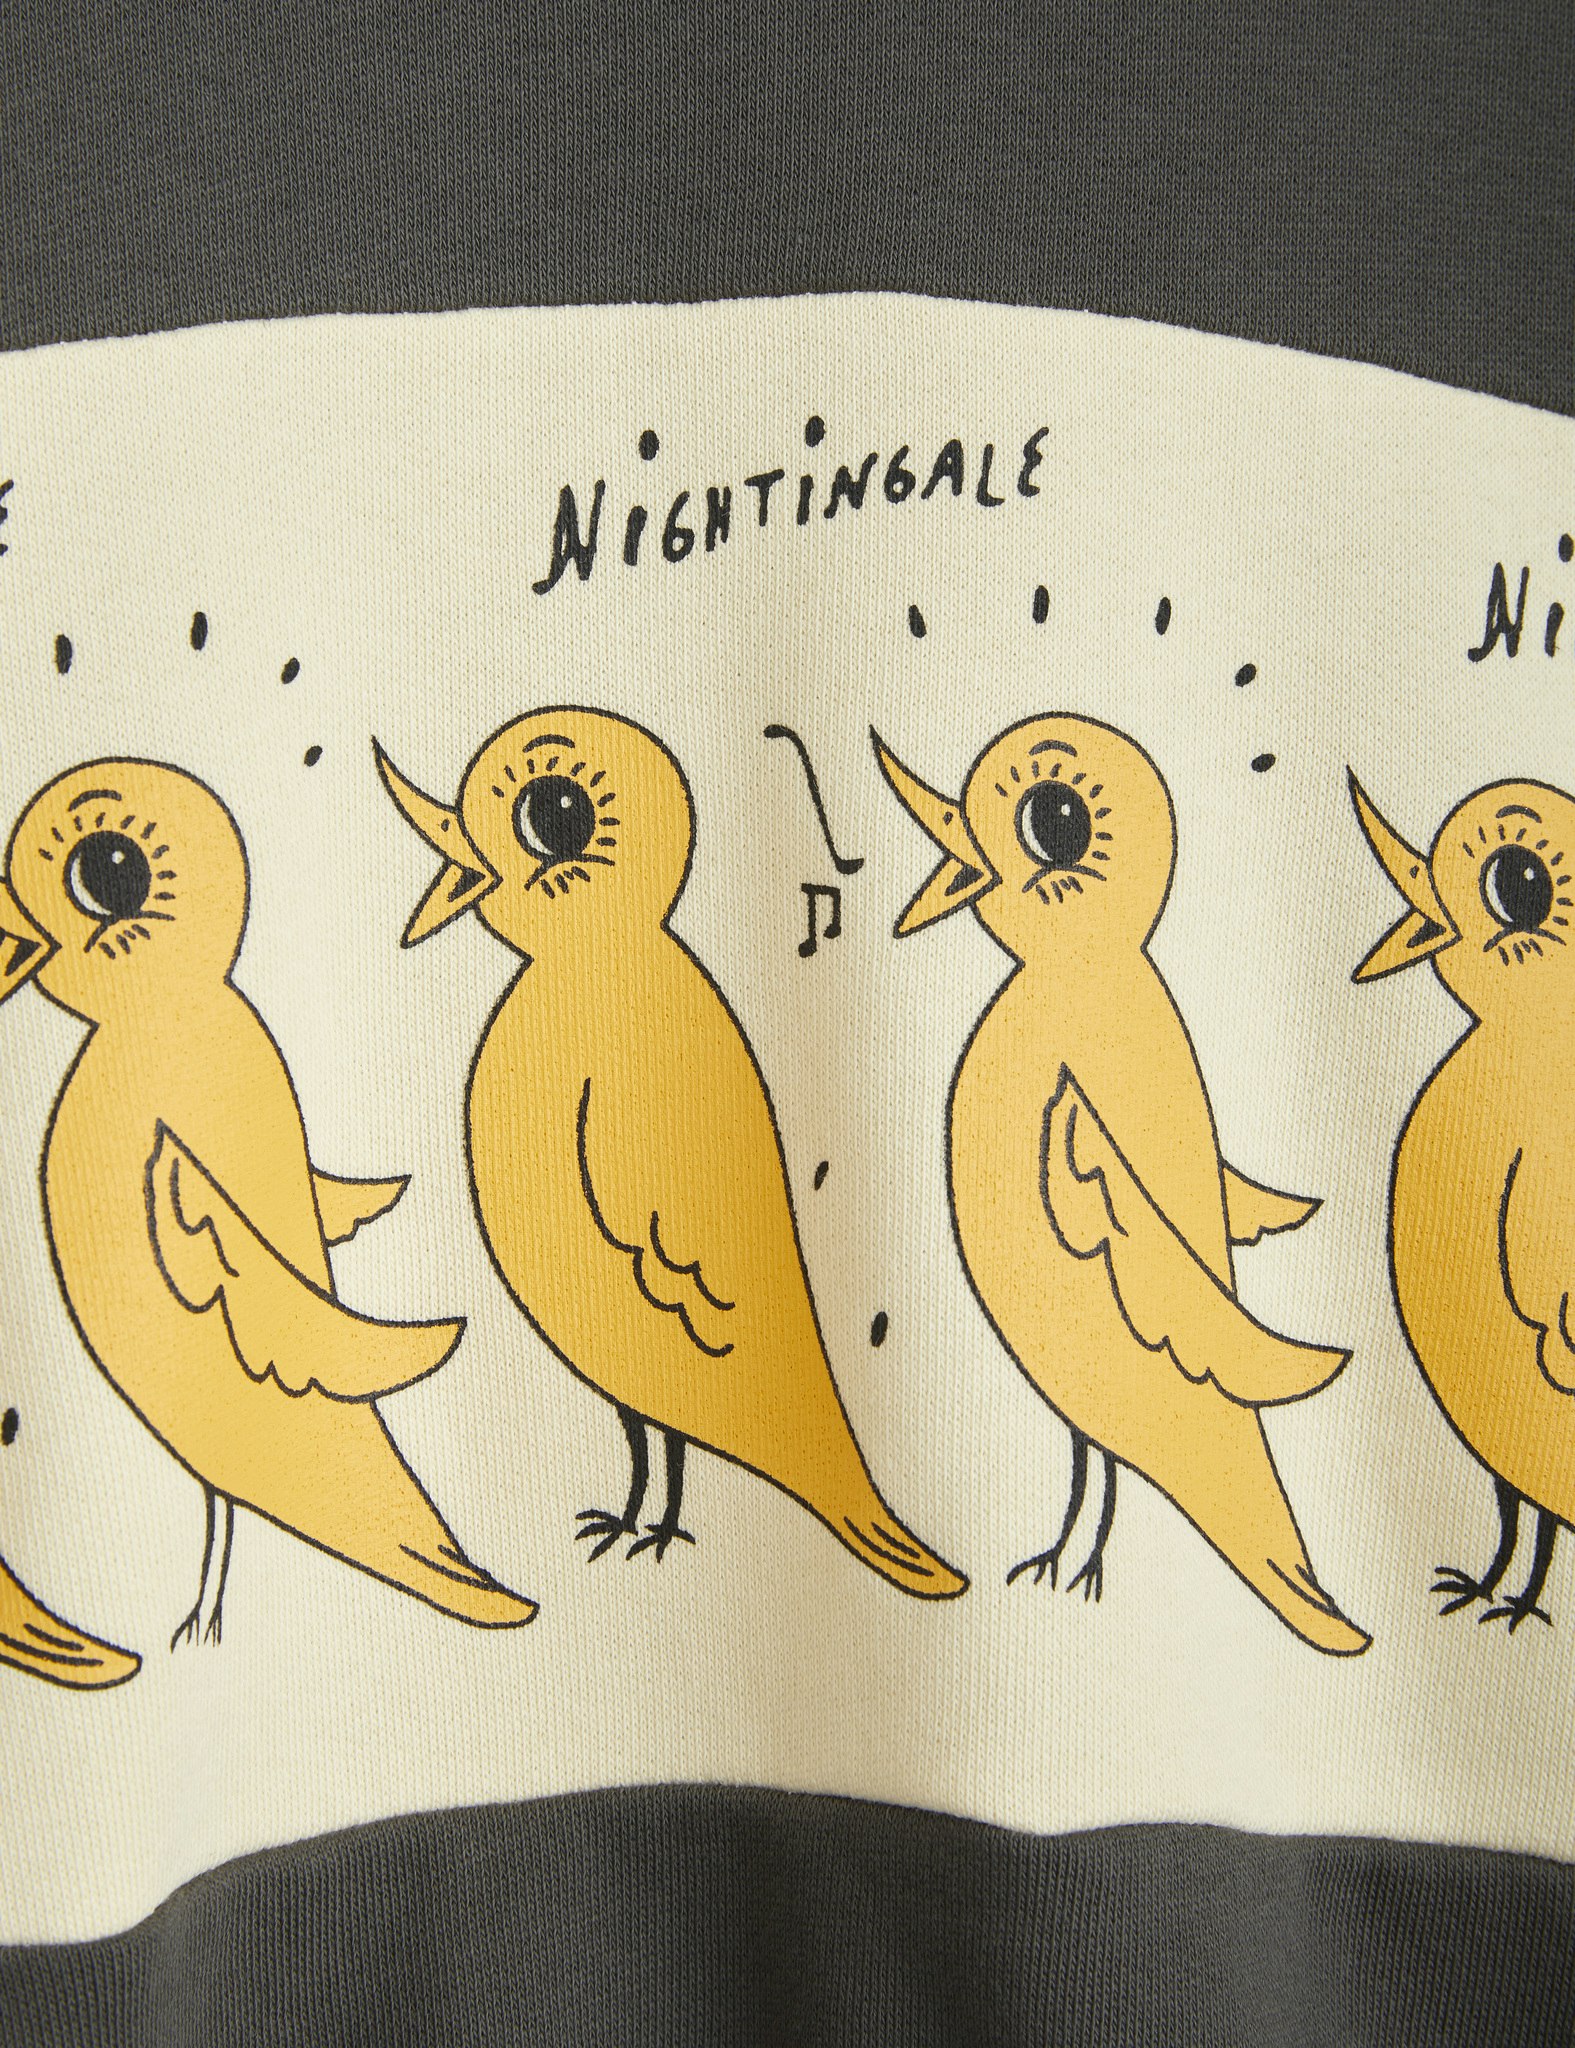 Mini Rodini Nightingale sweatshirt - Chapter 2 104/110 endast 1 kvar